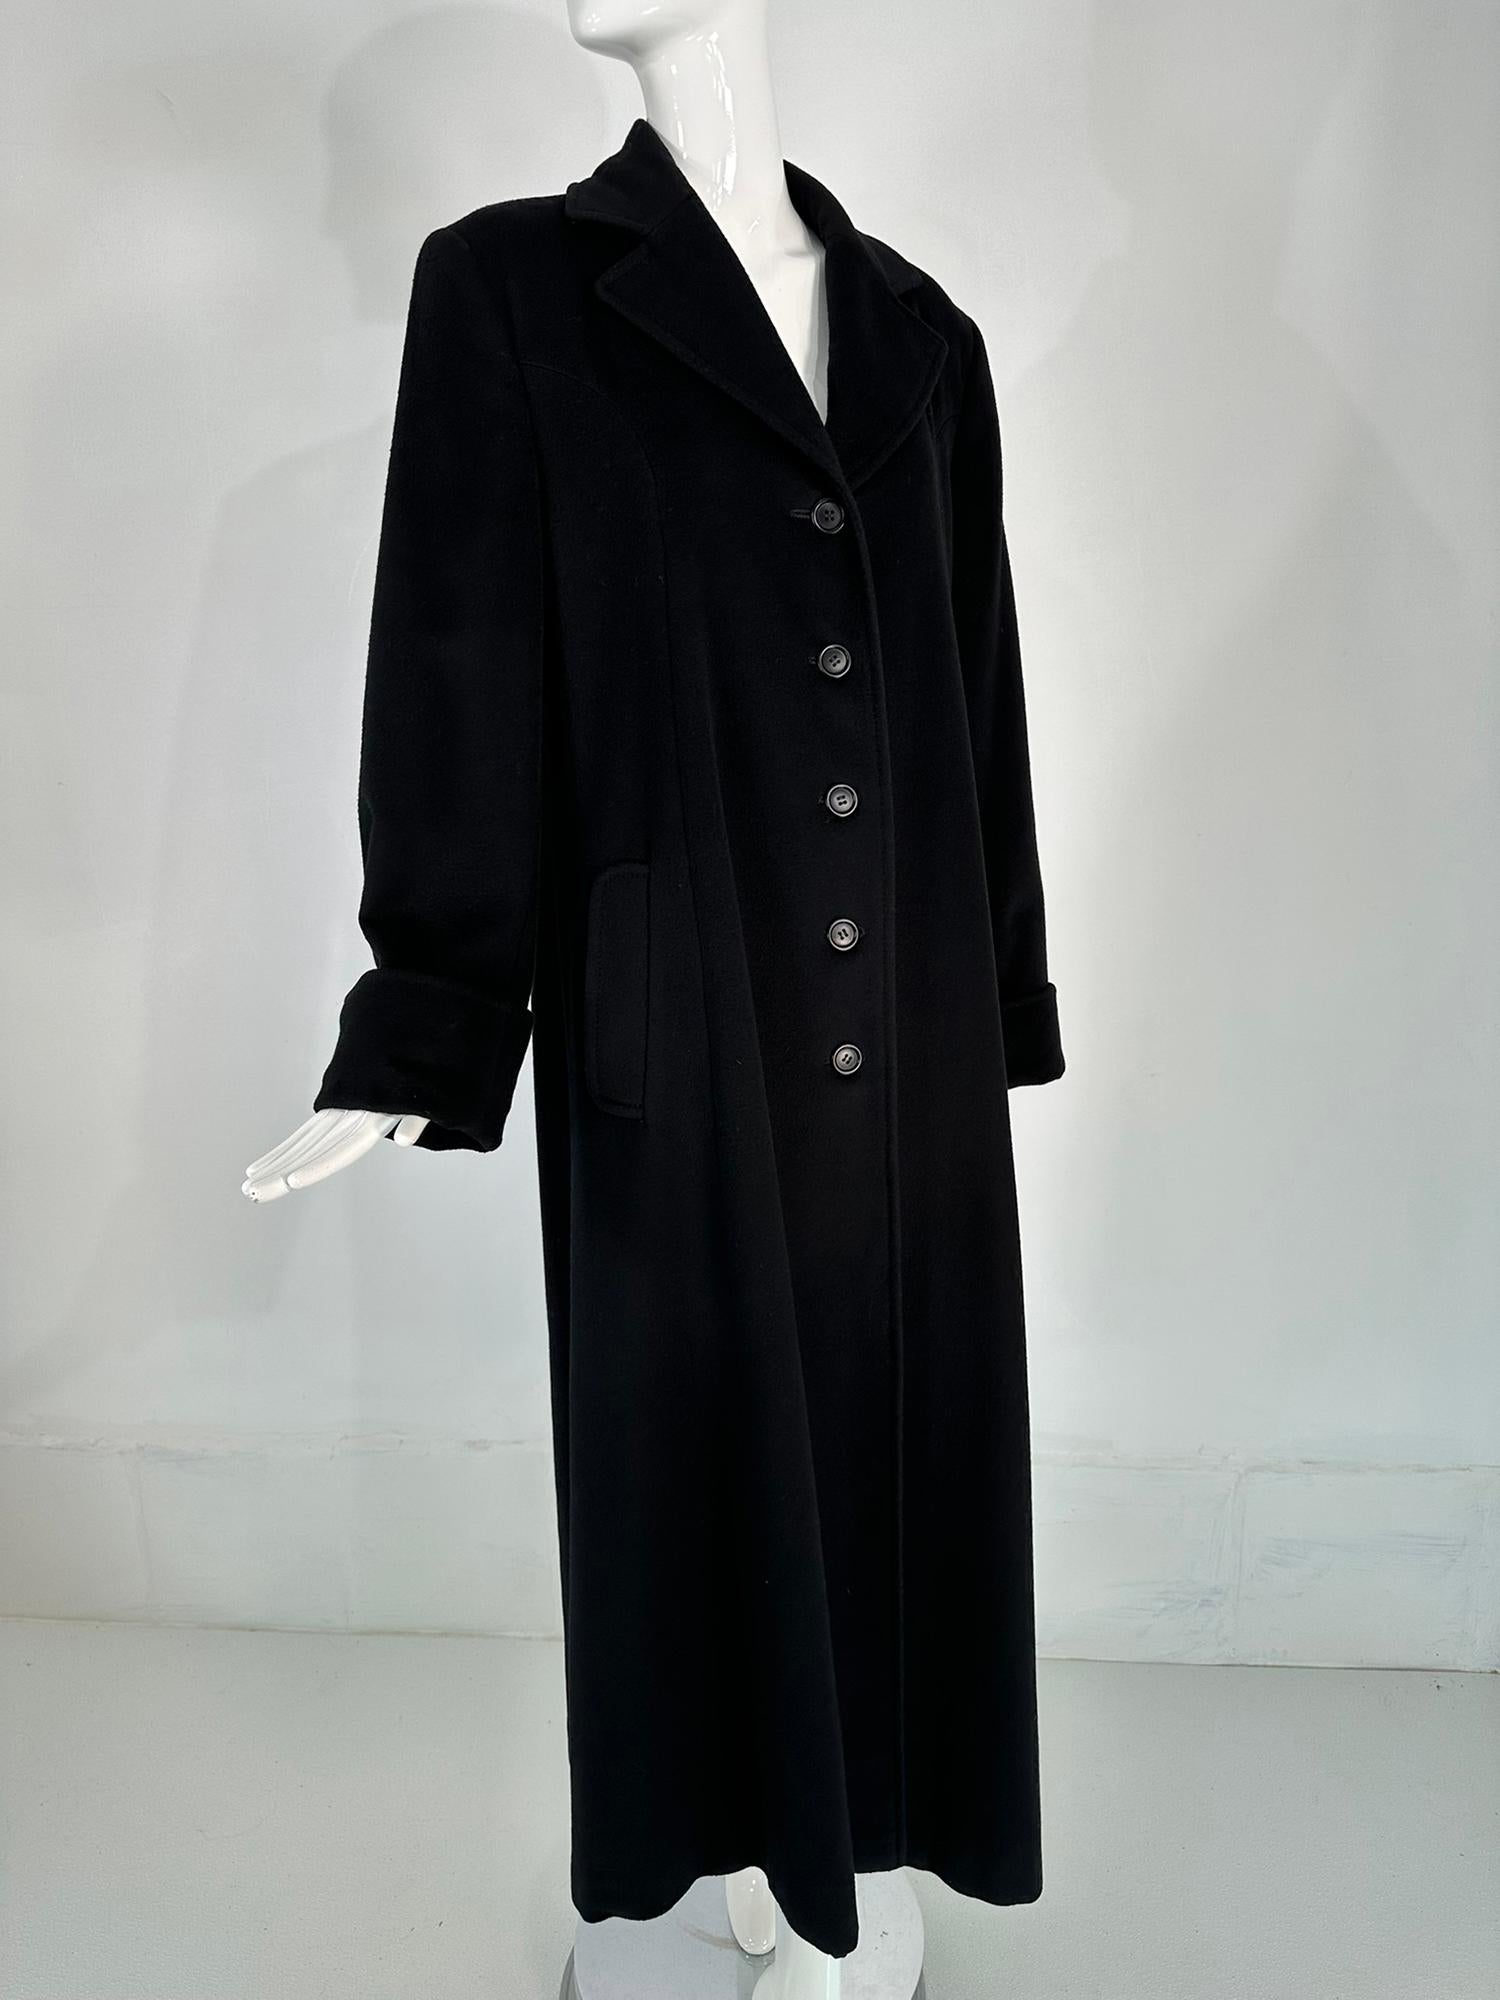 Manteau en cachemire noir Bergdorf Goodman des années 1990. Un manteau en cachemire noir luxueux qui fait sensation. Ce manteau à simple boutonnage a des revers crantés, les manches longues ont des poignets à revers profonds. Il y a des poches à